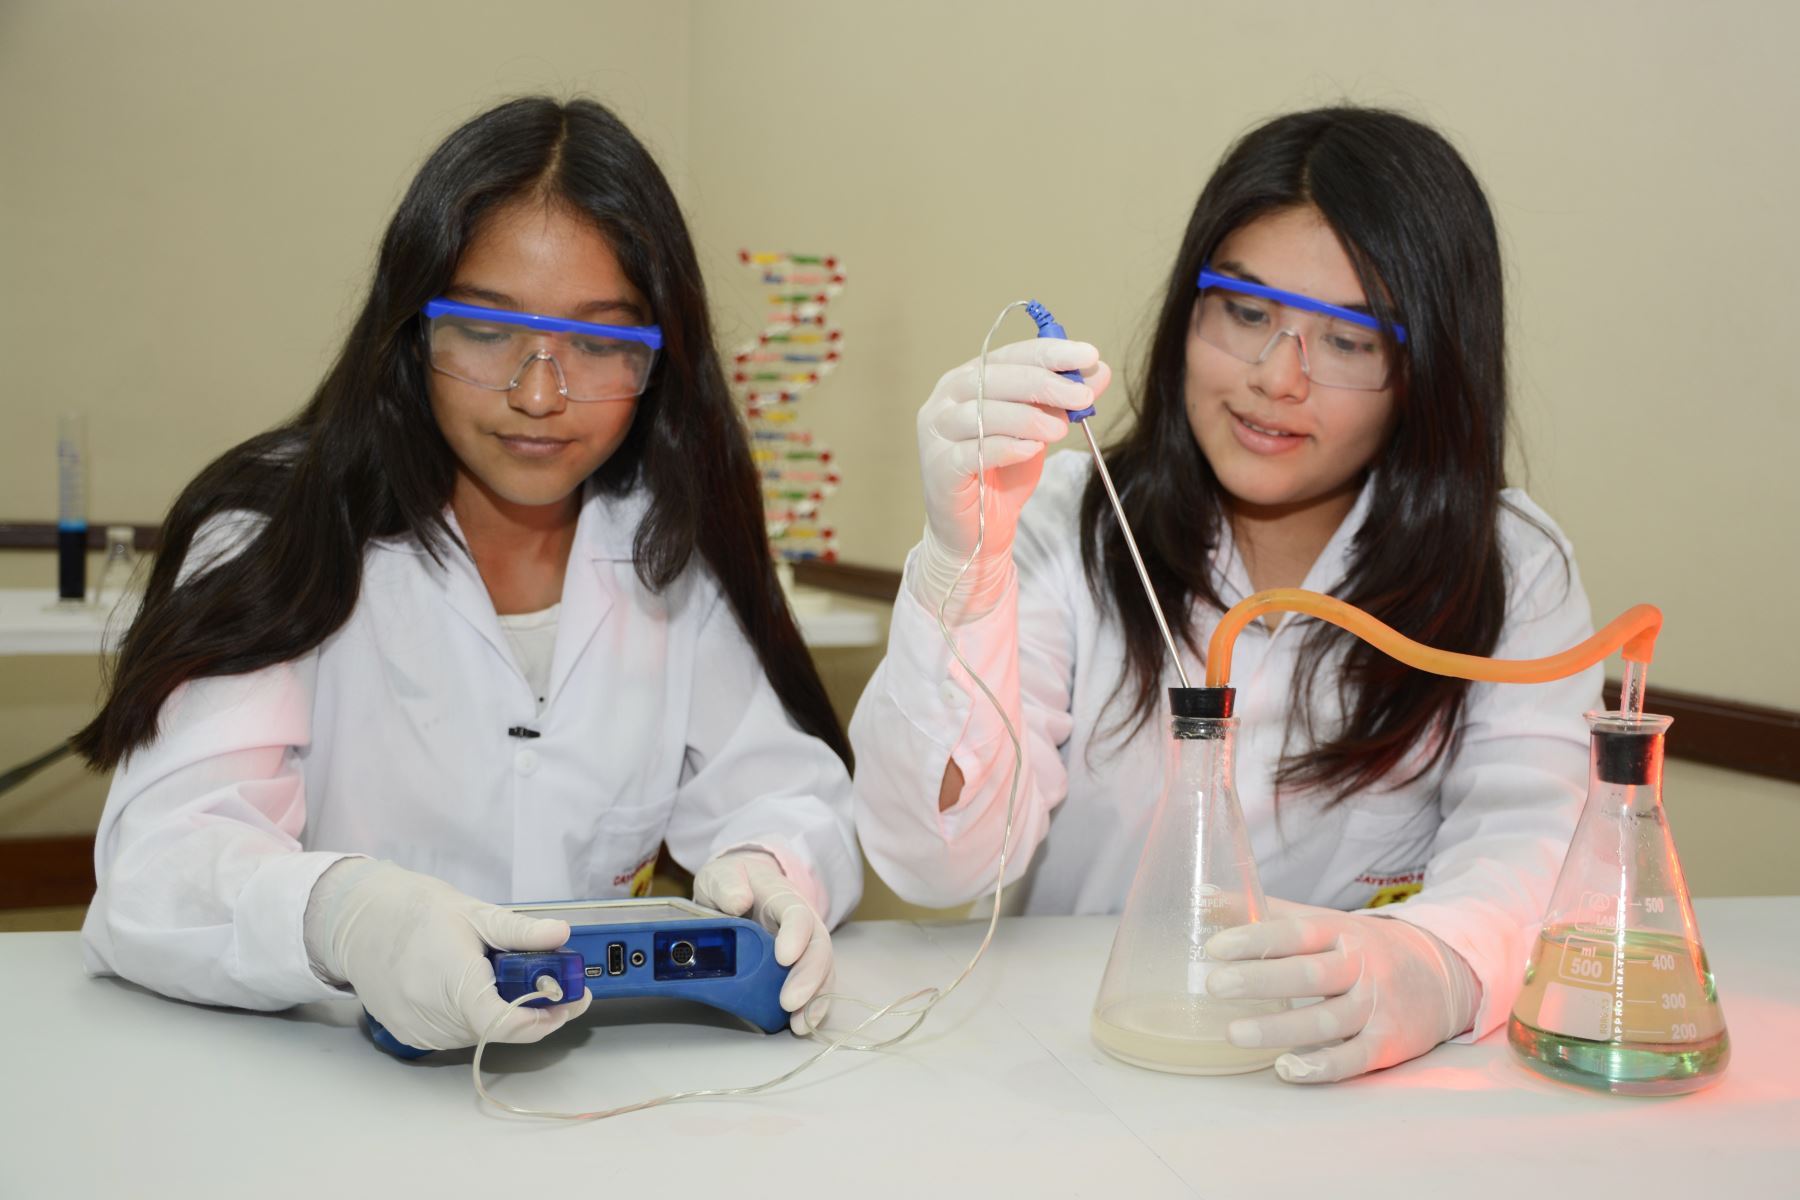 Esta jornada virtual reunirá a 6 destacadas científicas, 6 inventoras profesionales y 6 niñas escolares investigadoras e inventoras del futuro.